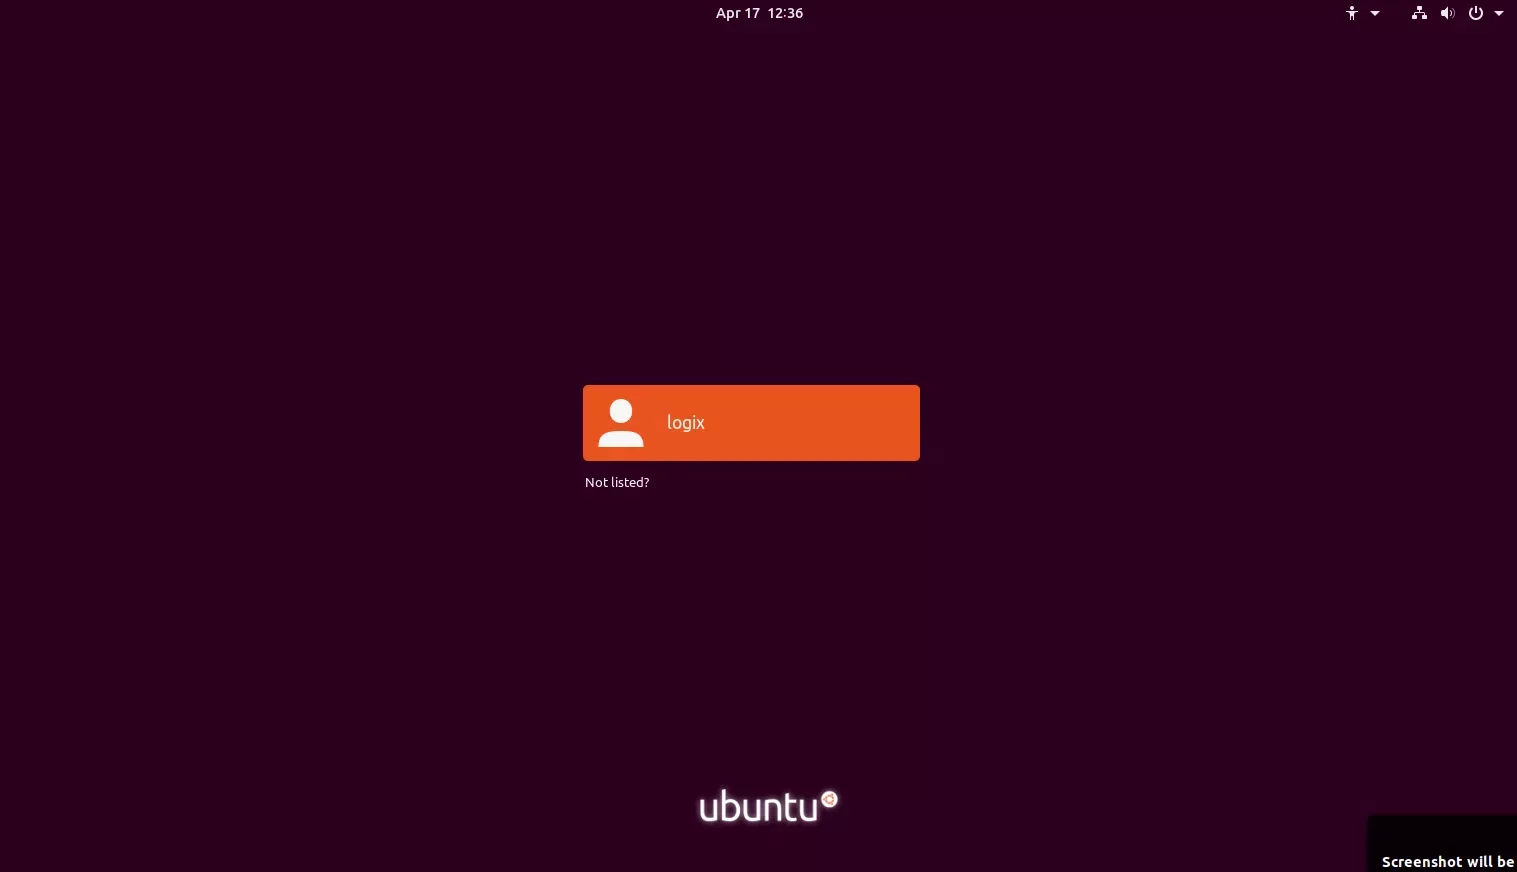 Tela de login do Ubuntu 19.04 Disco Dingo